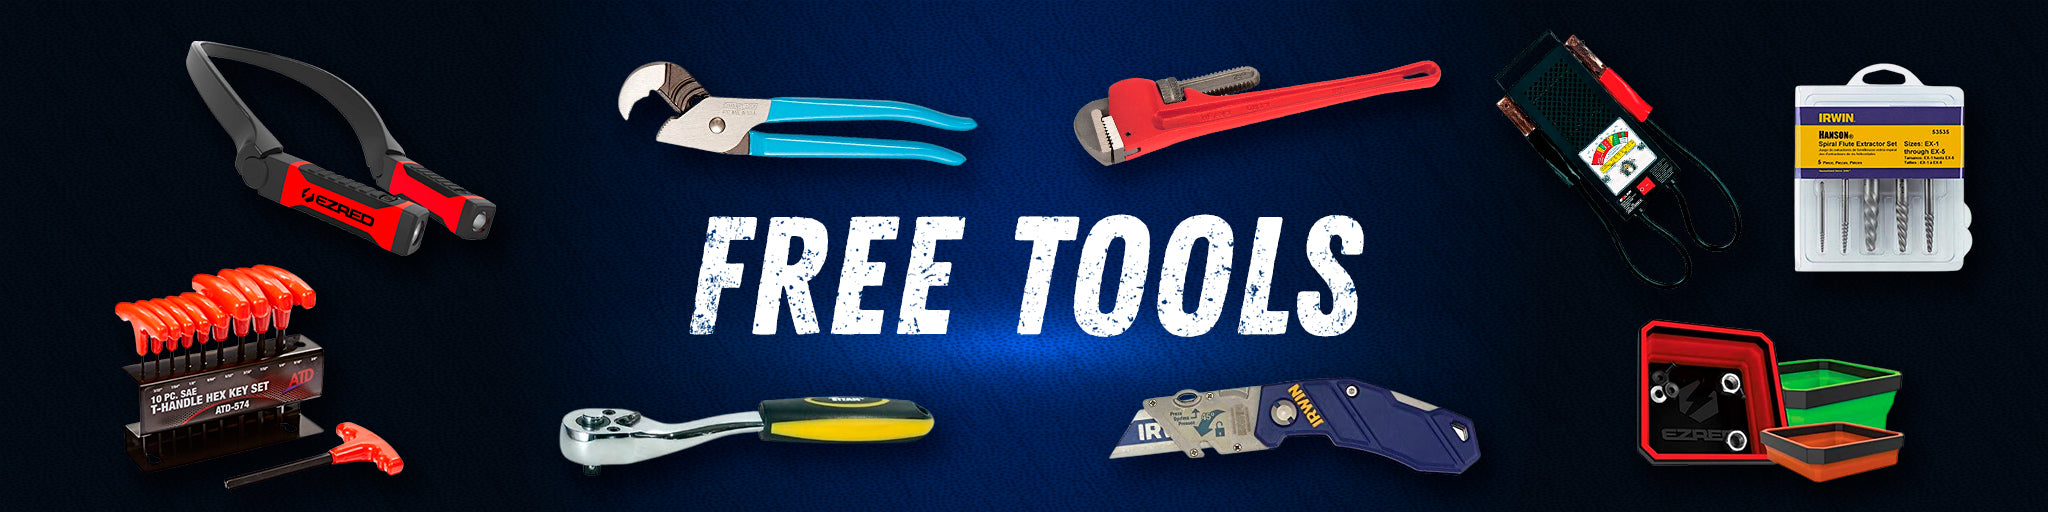 Free Tools – MPR Tools & Equipment